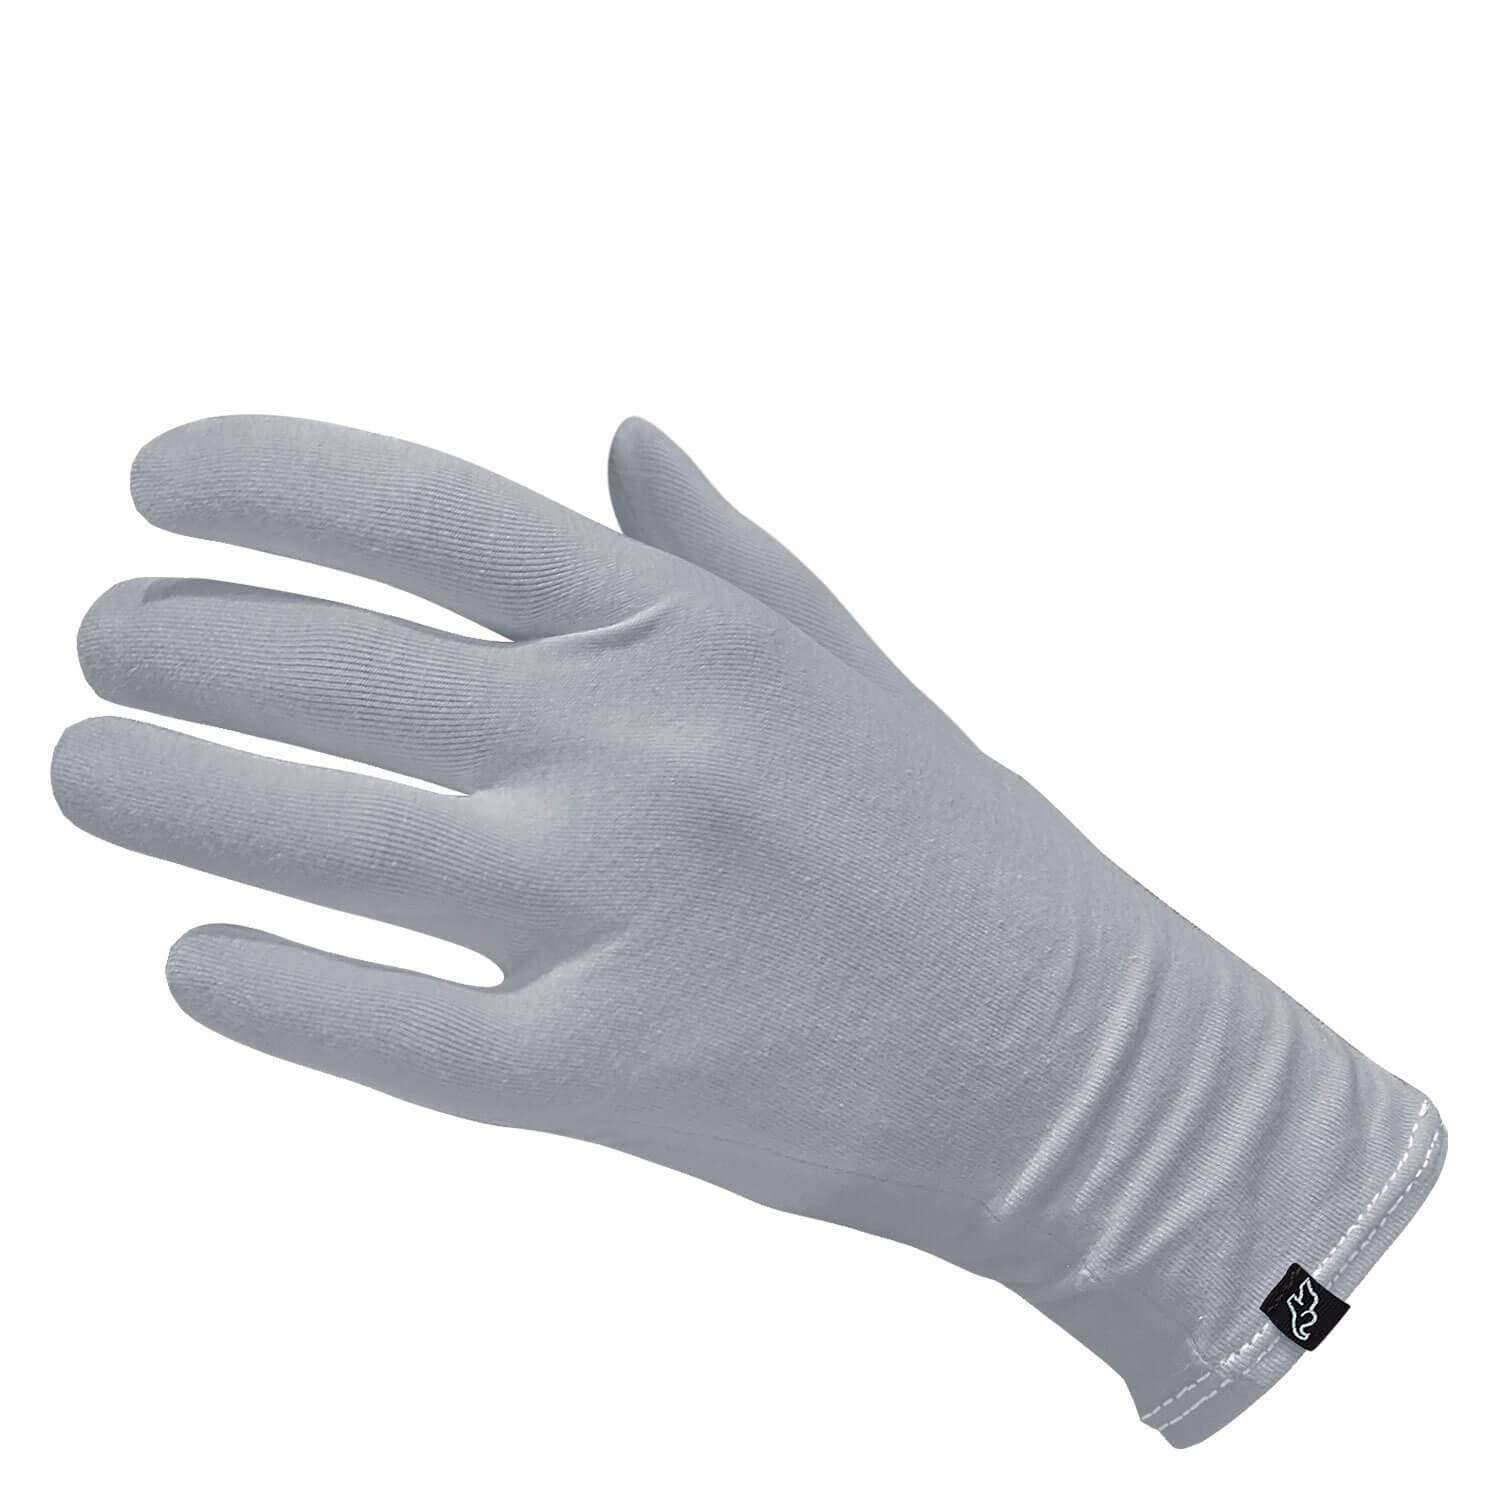 ELEPHANTSKIN - Glove Grey L/XL